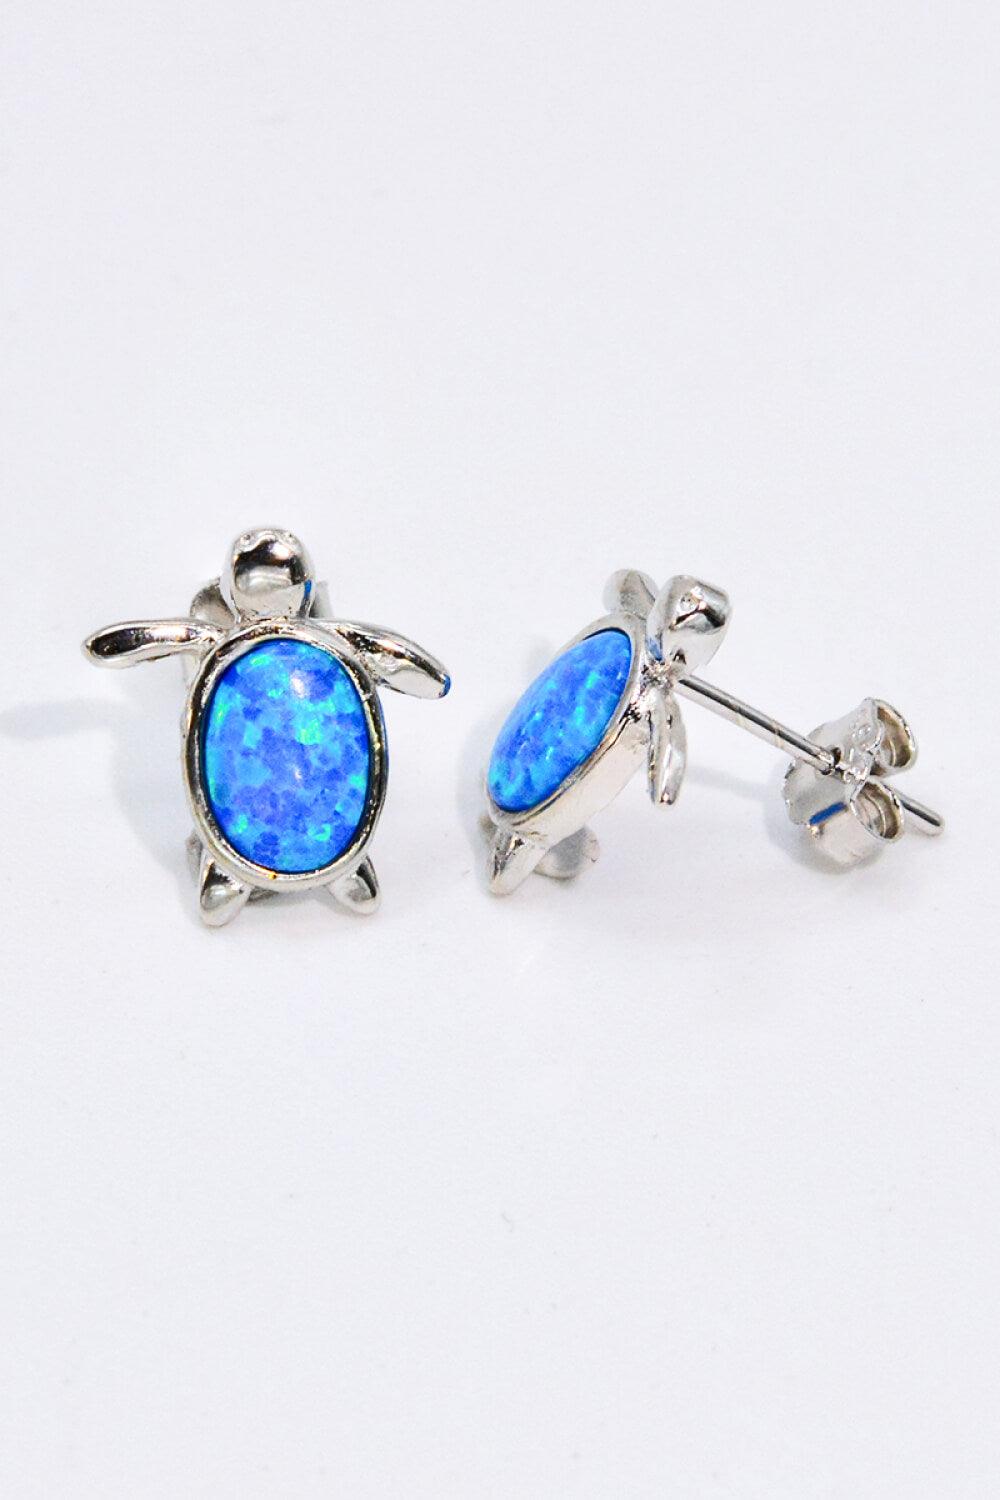 Opal Turtle Stud Earrings - Flyclothing LLC